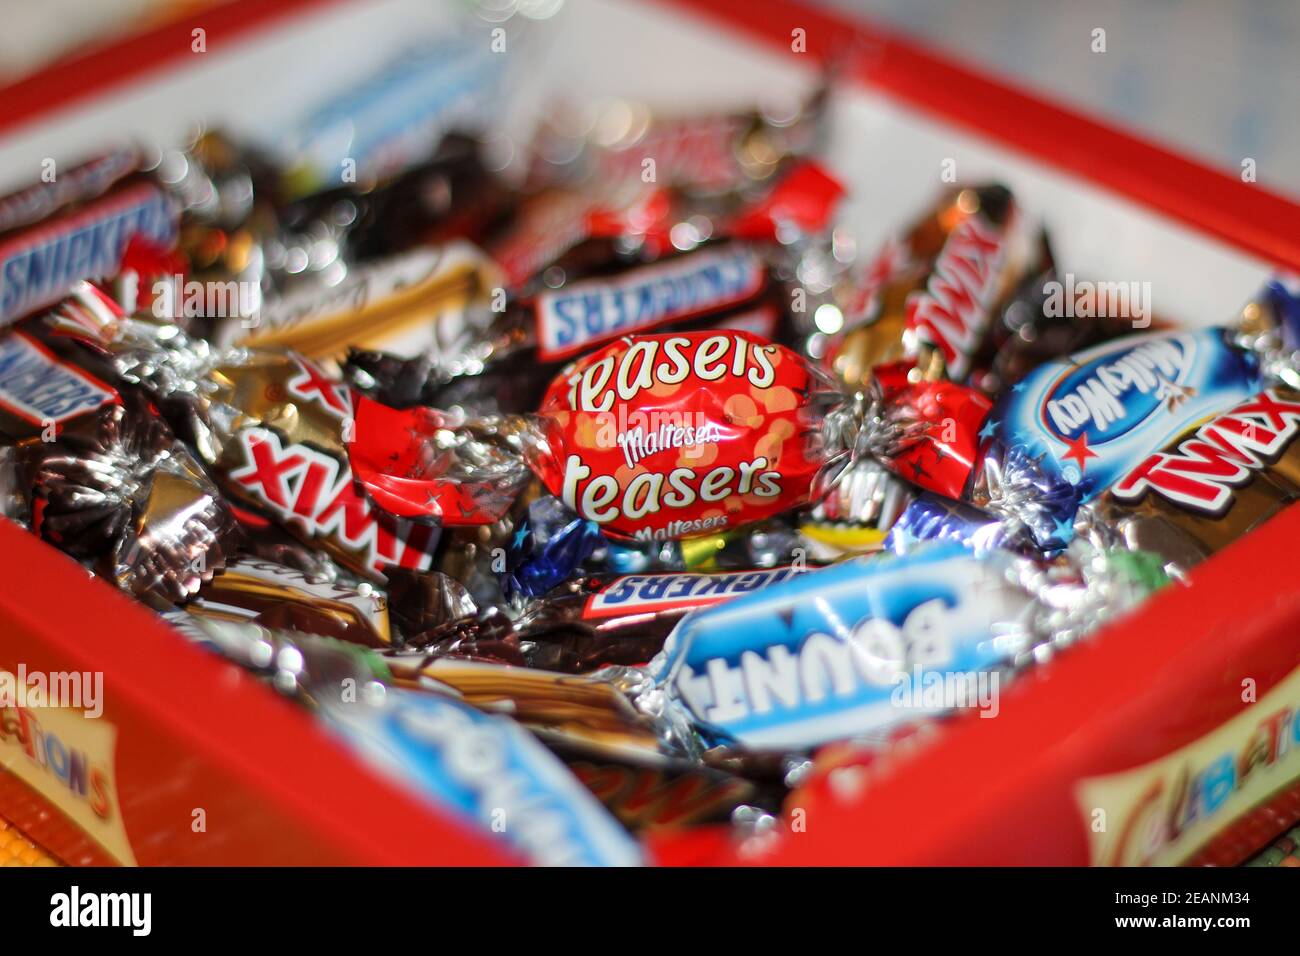 Un mélange de chocolats Celebrations vendus au Royaume-Uni dans une boîte cadeau Celebrations. MaLTESERS teasers, Bounty, Snickers, galaxie, twigx, mars bar et laiteux chemin Banque D'Images